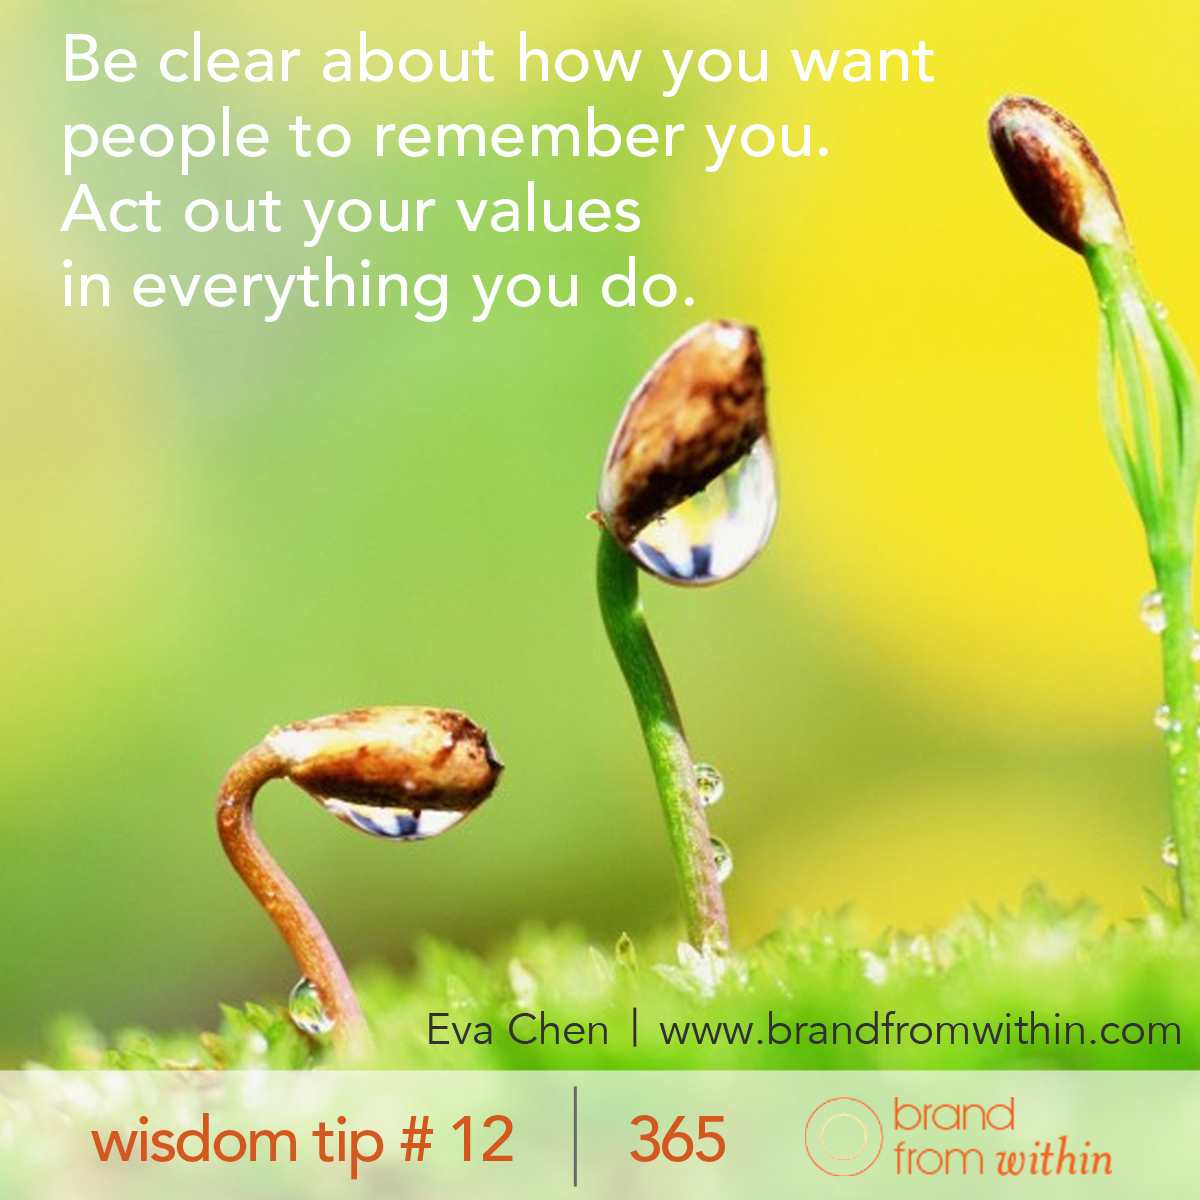 DAY 12 WISDOM TIP